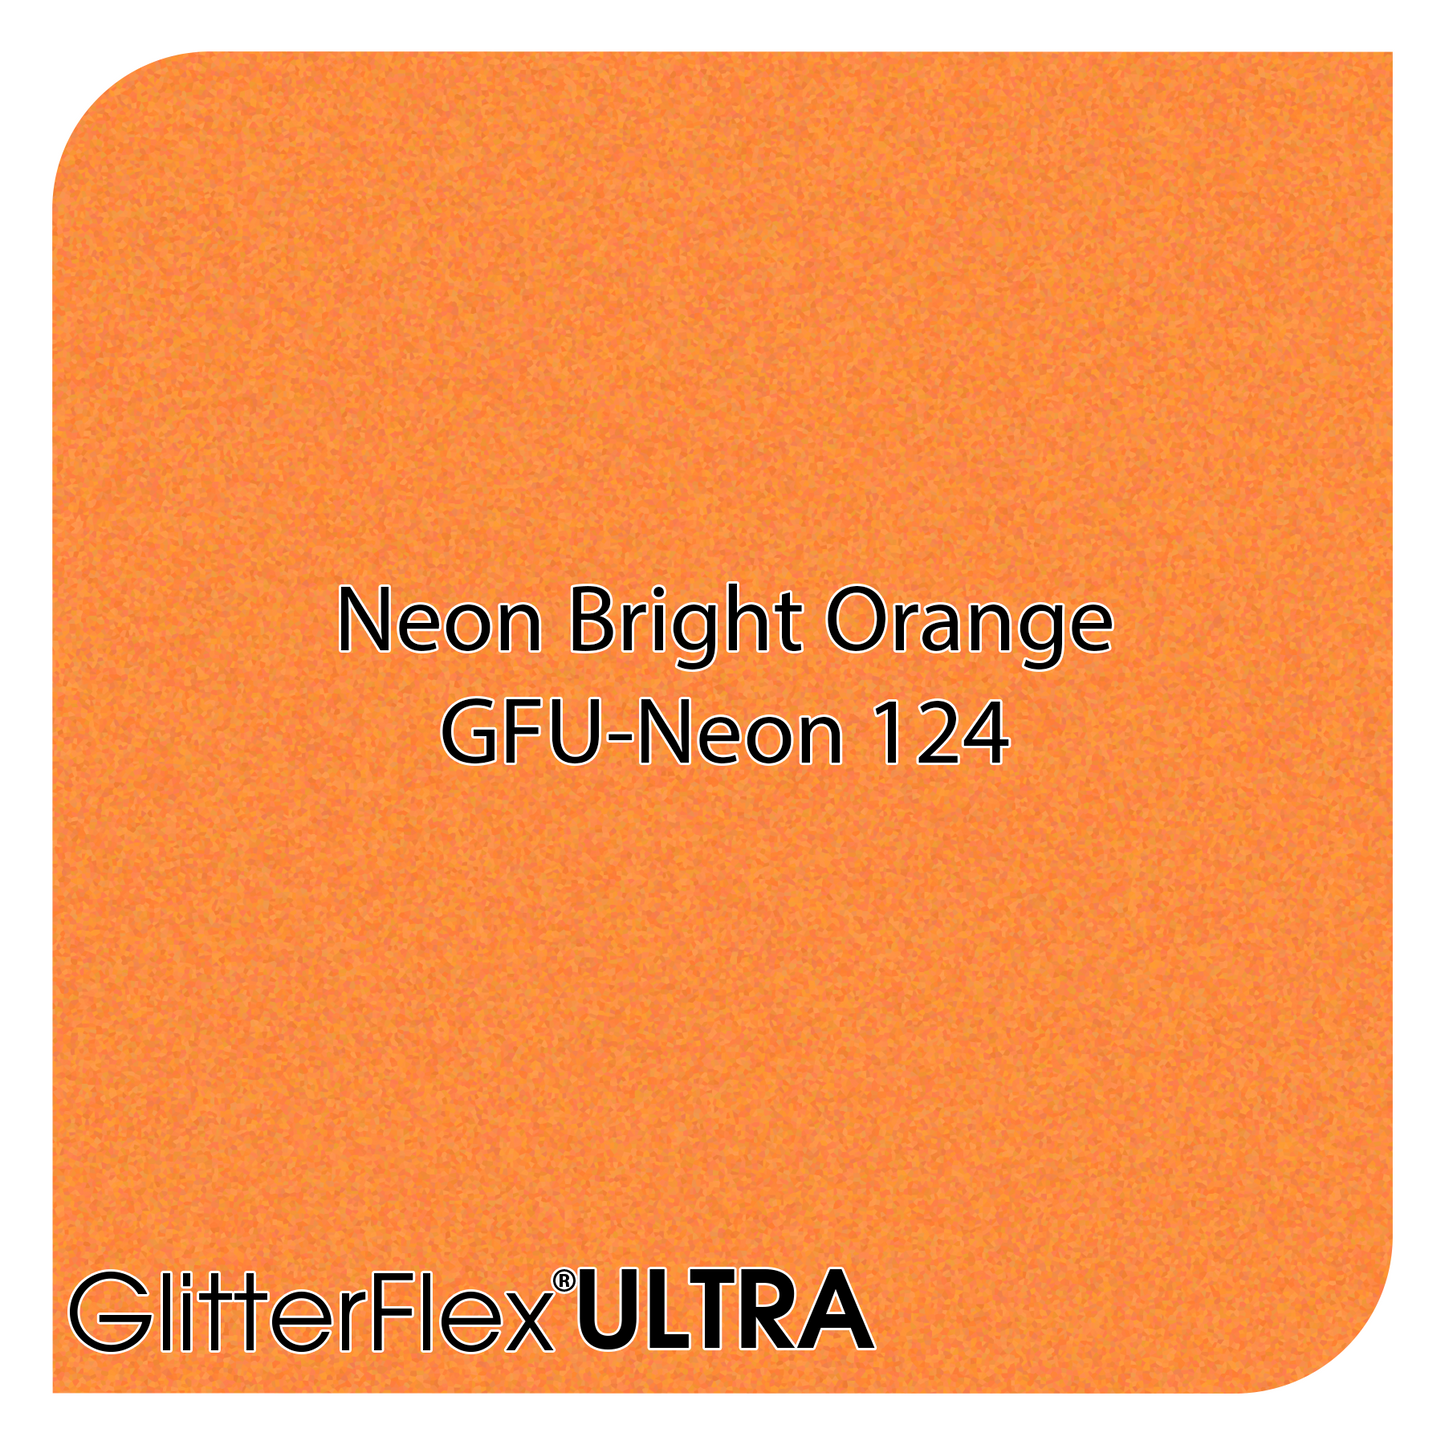 GLITTERFLEX® ULTRA NEONS - 12" x 1 Yard (3 Feet)